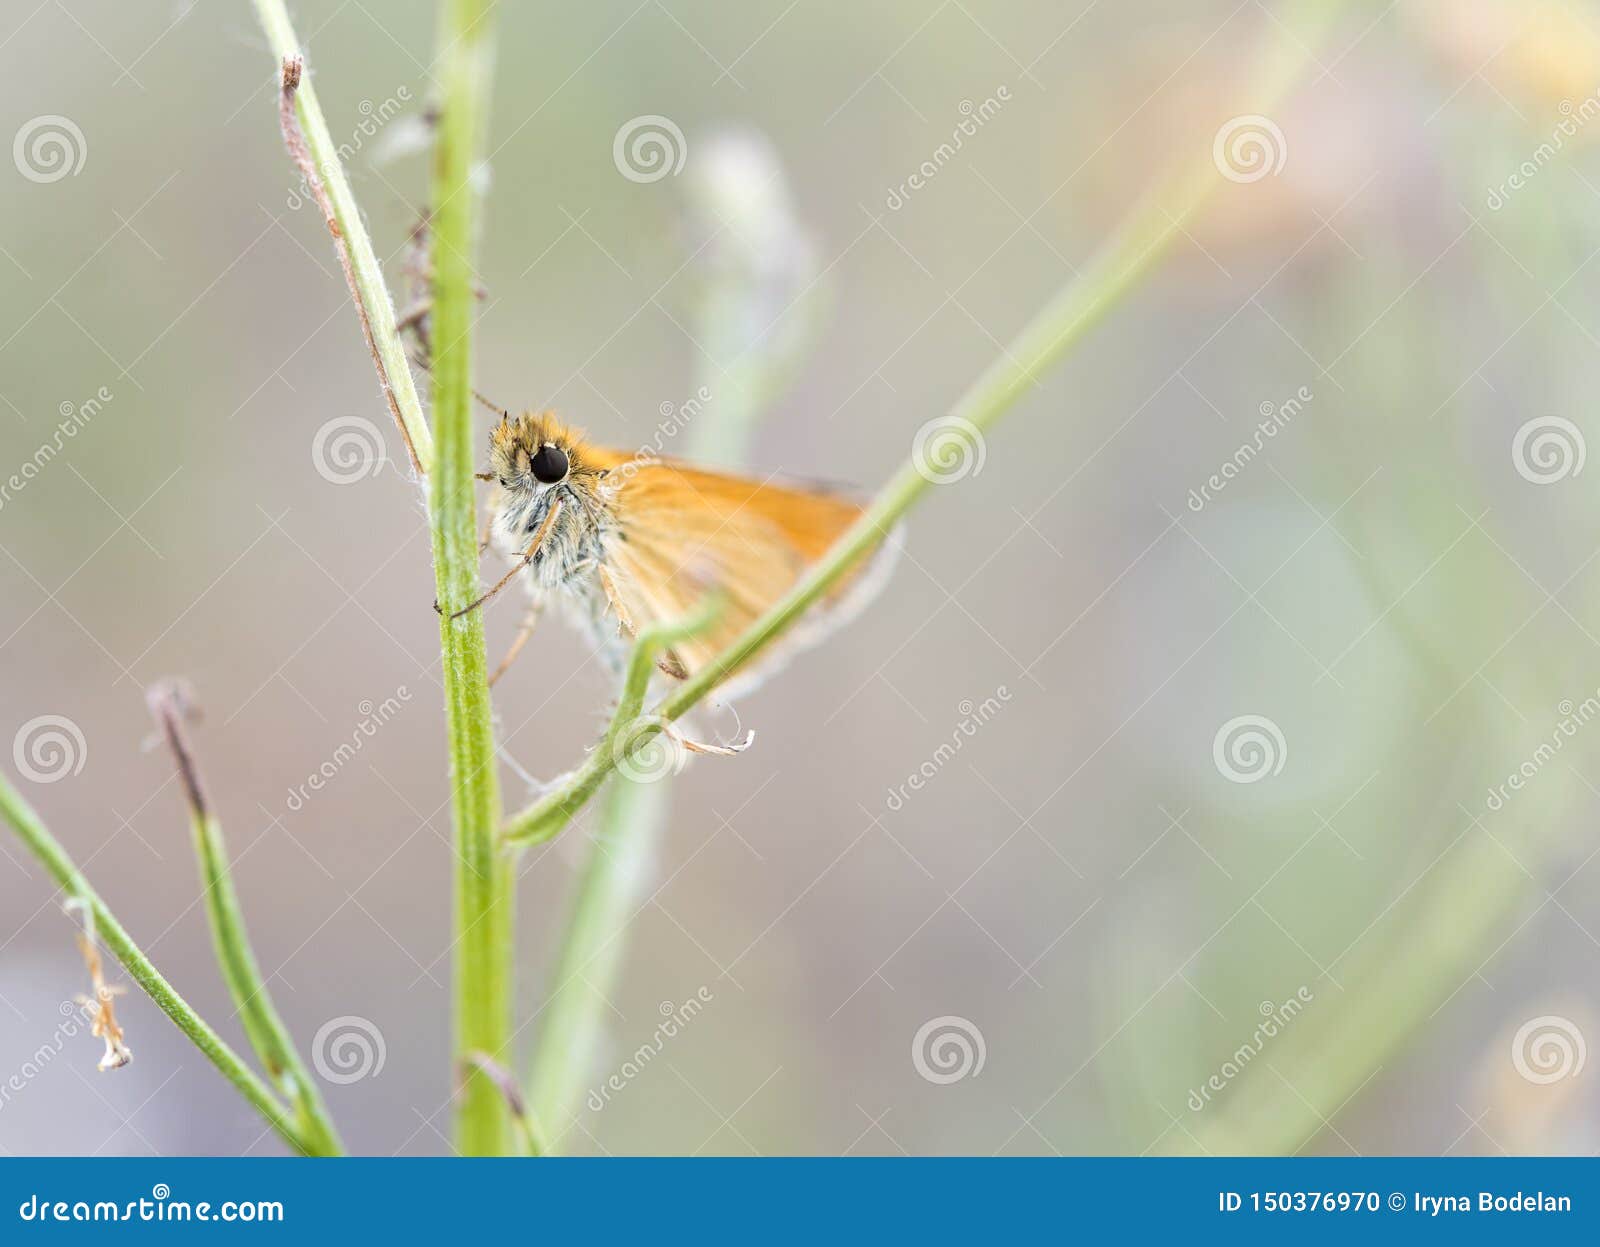 Милая маленькая оранжевая бабочка с огромным зеленым растением объятий глаз. Фото макроса милой маленькой оранжевой бабочки с огромными глазами обнимая зеленое растение на луге лета с мягкой предпосылкой